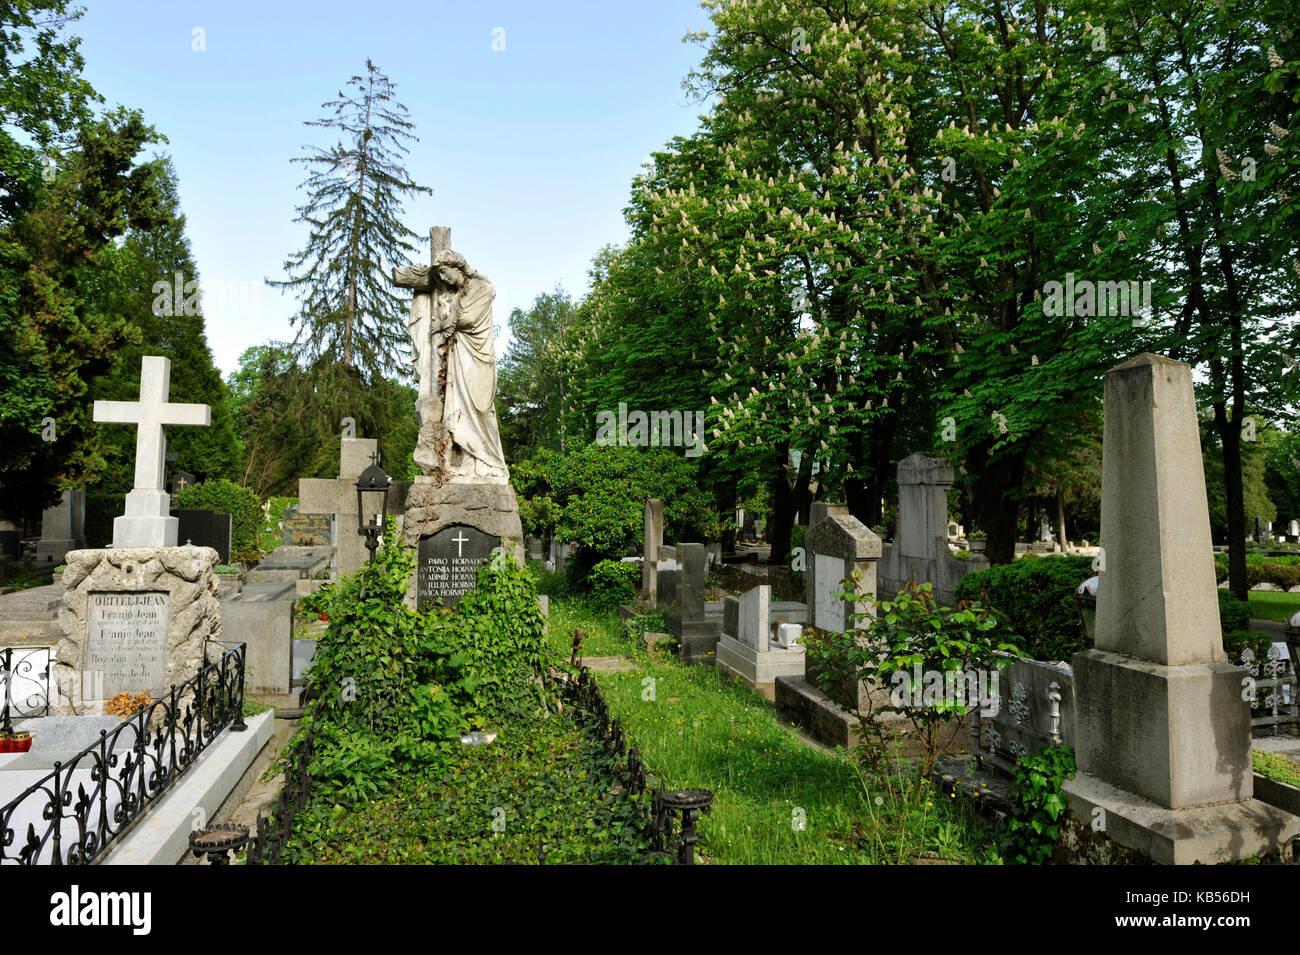 Croatie, Zagreb, mirogoj cemetery, l'un des plus grands d'Europe, voyage, Banque D'Images